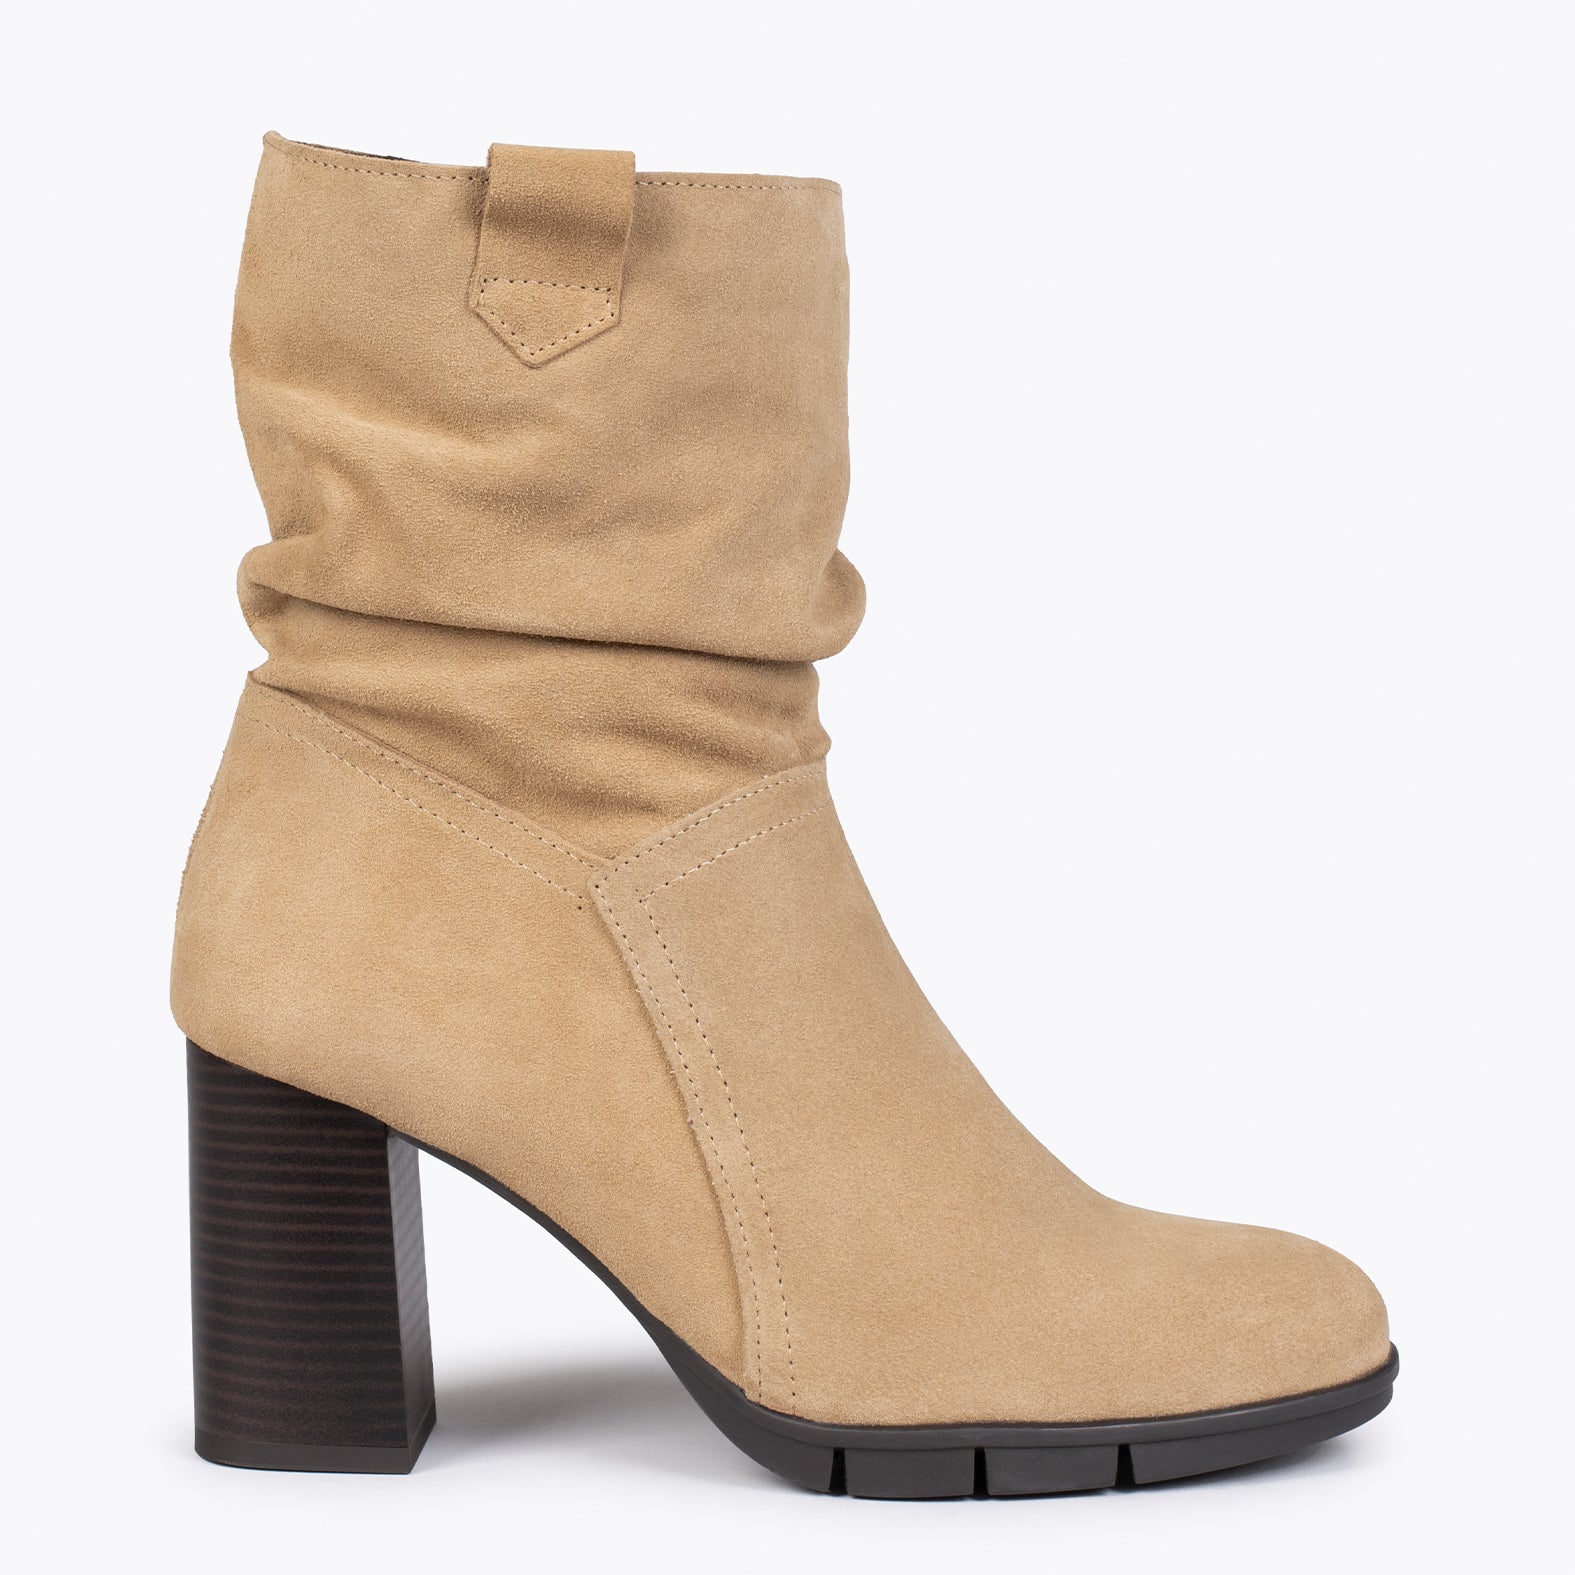 WAVE – BEIGE high heel booties with zipper